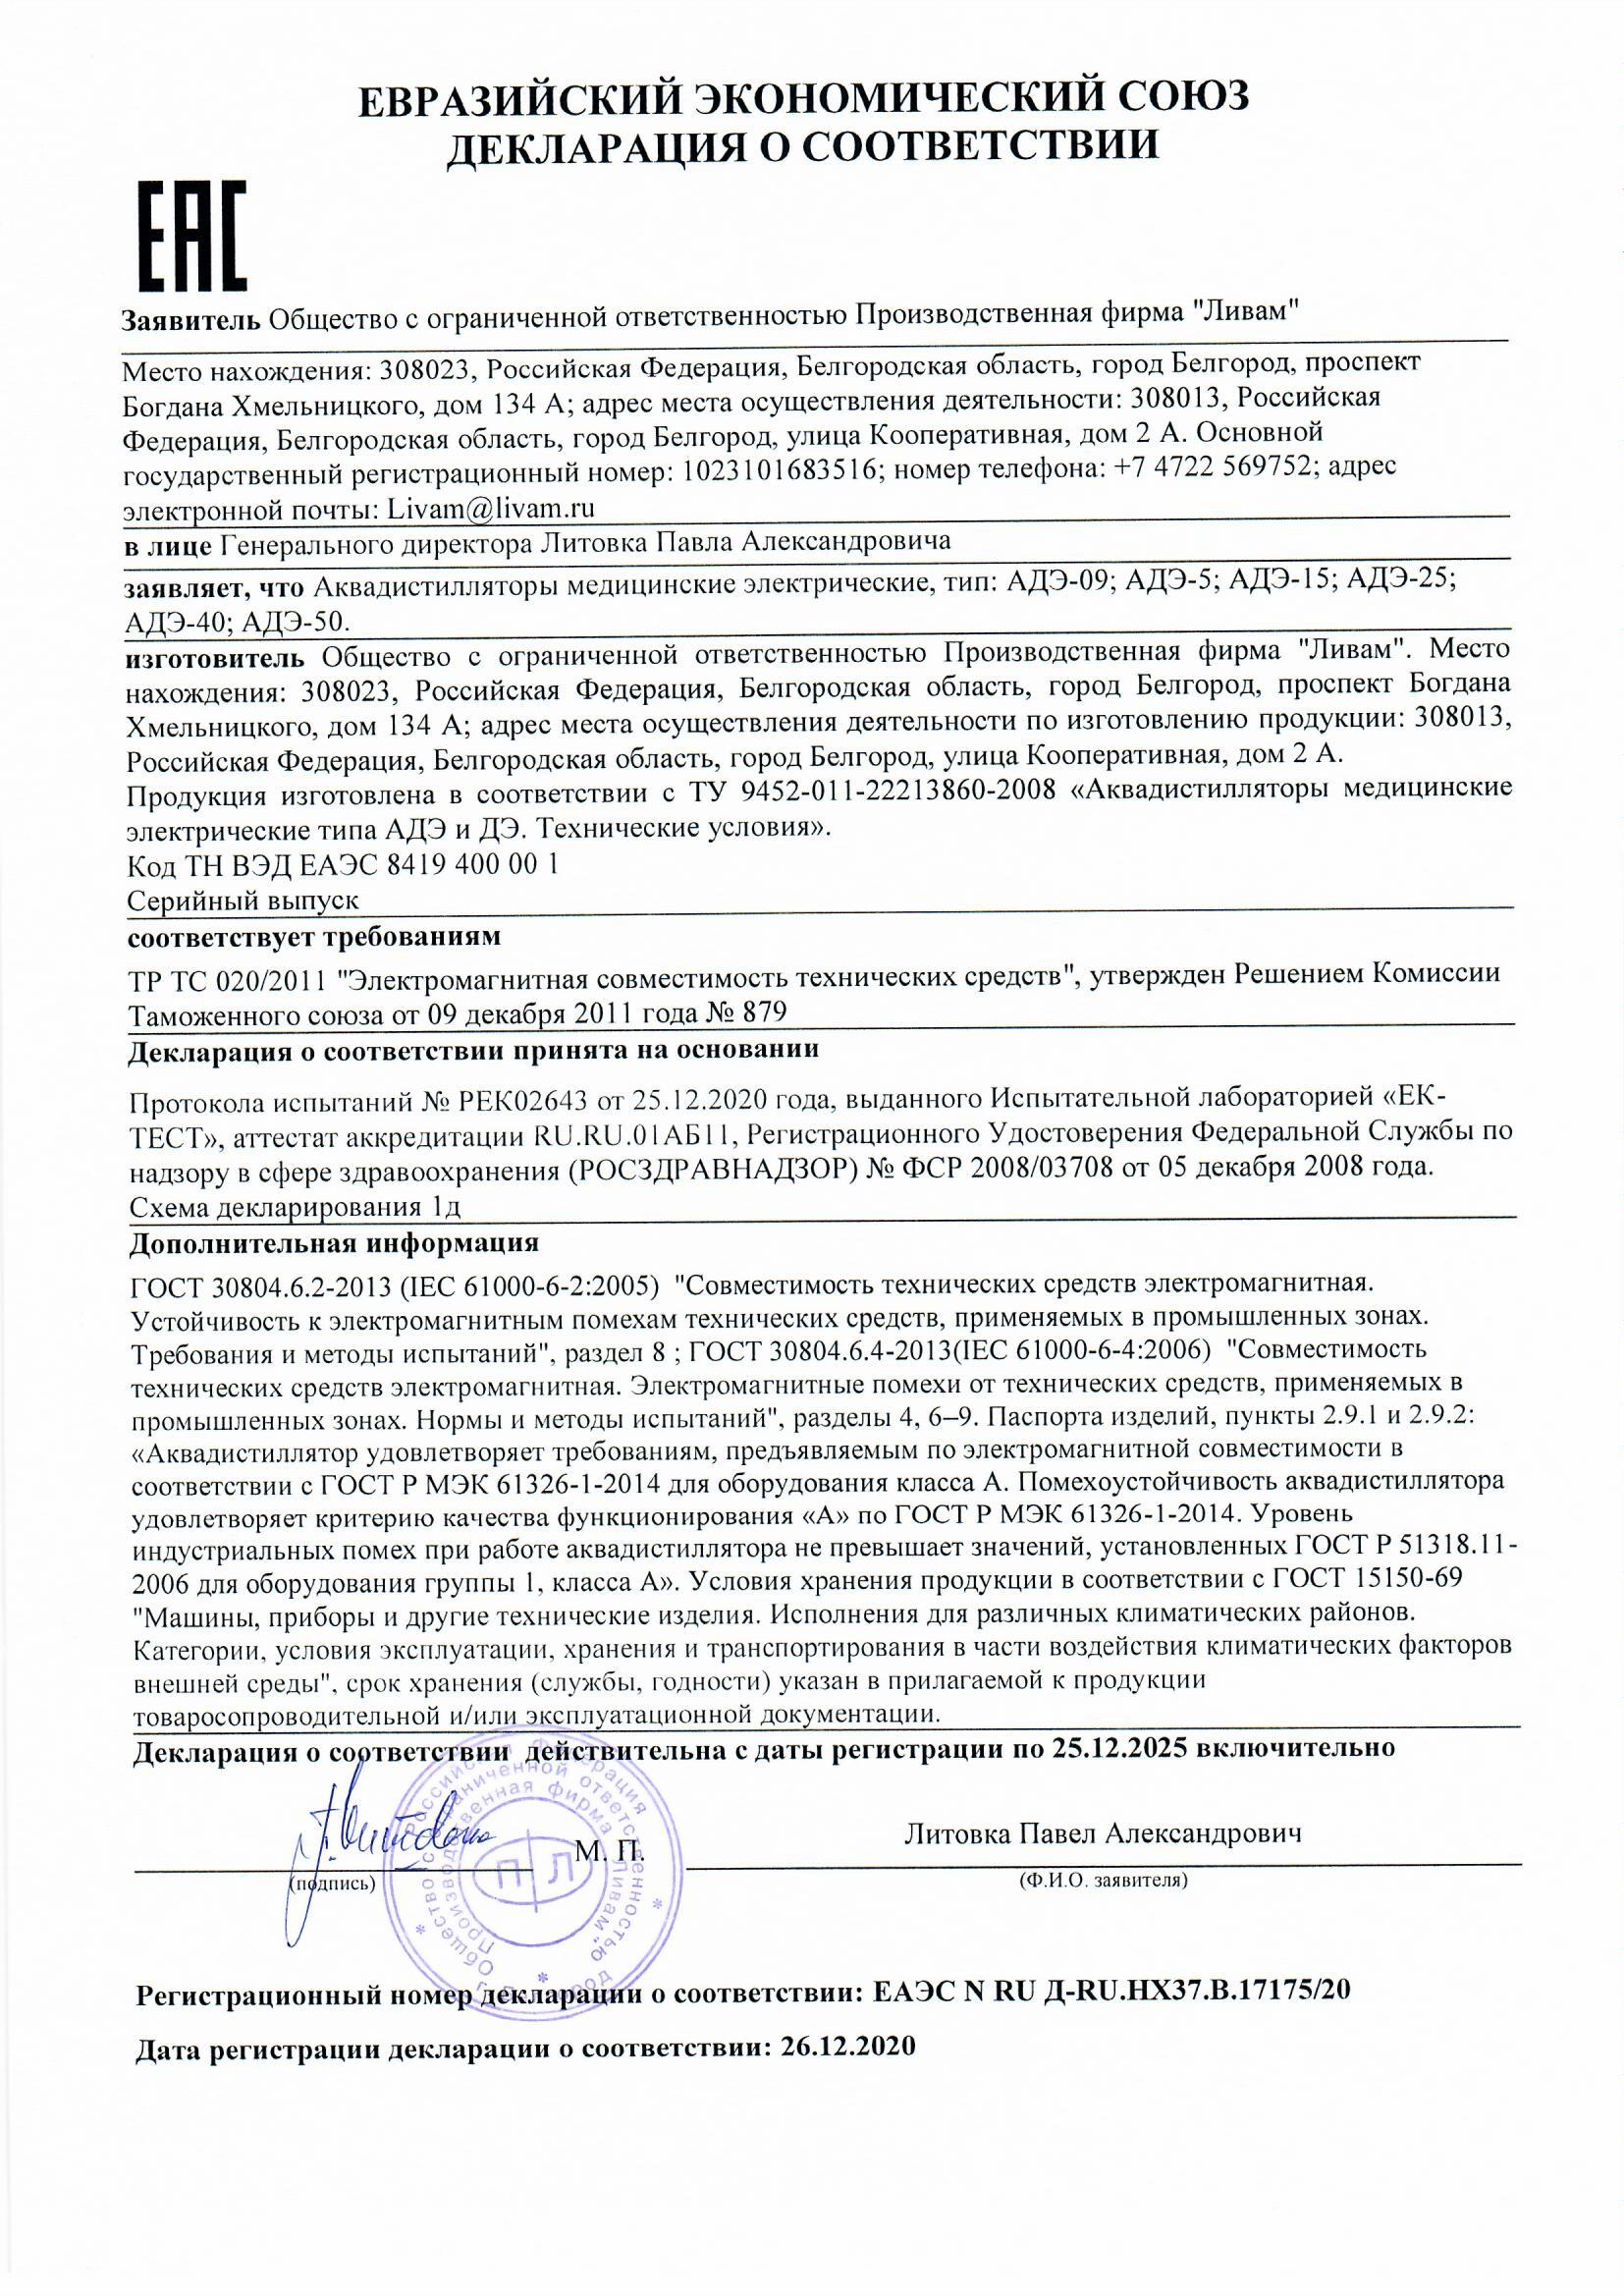 Декларация о соответствии АДЭ-40, АДЭ-50 ТР ТС 020-2011 Электромагнитная совместимость